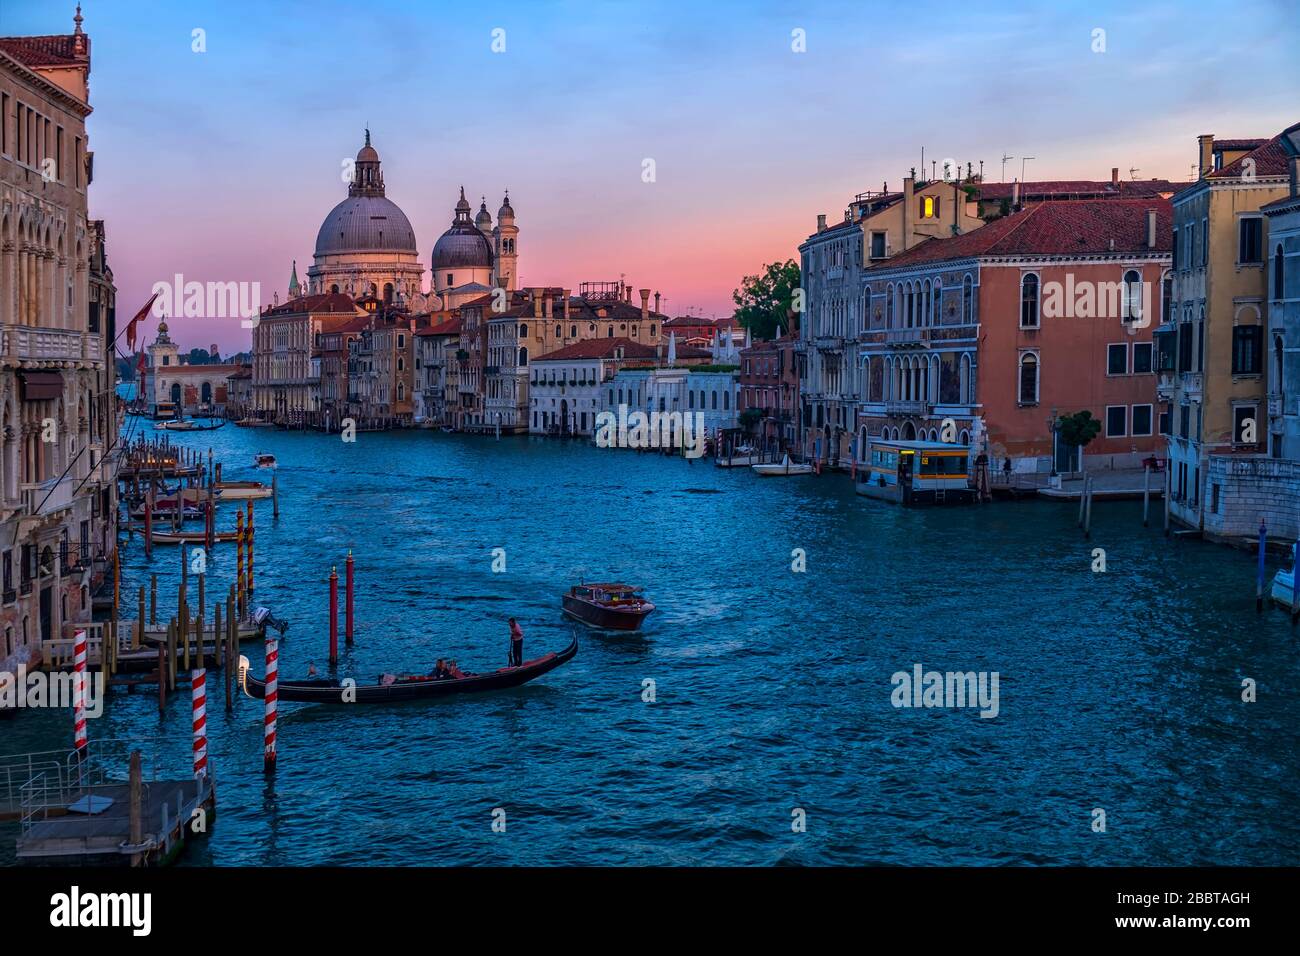 Grand Canal de Venise depuis le pont Academia.style Canaletto. Vénétie, Italie. Banque D'Images